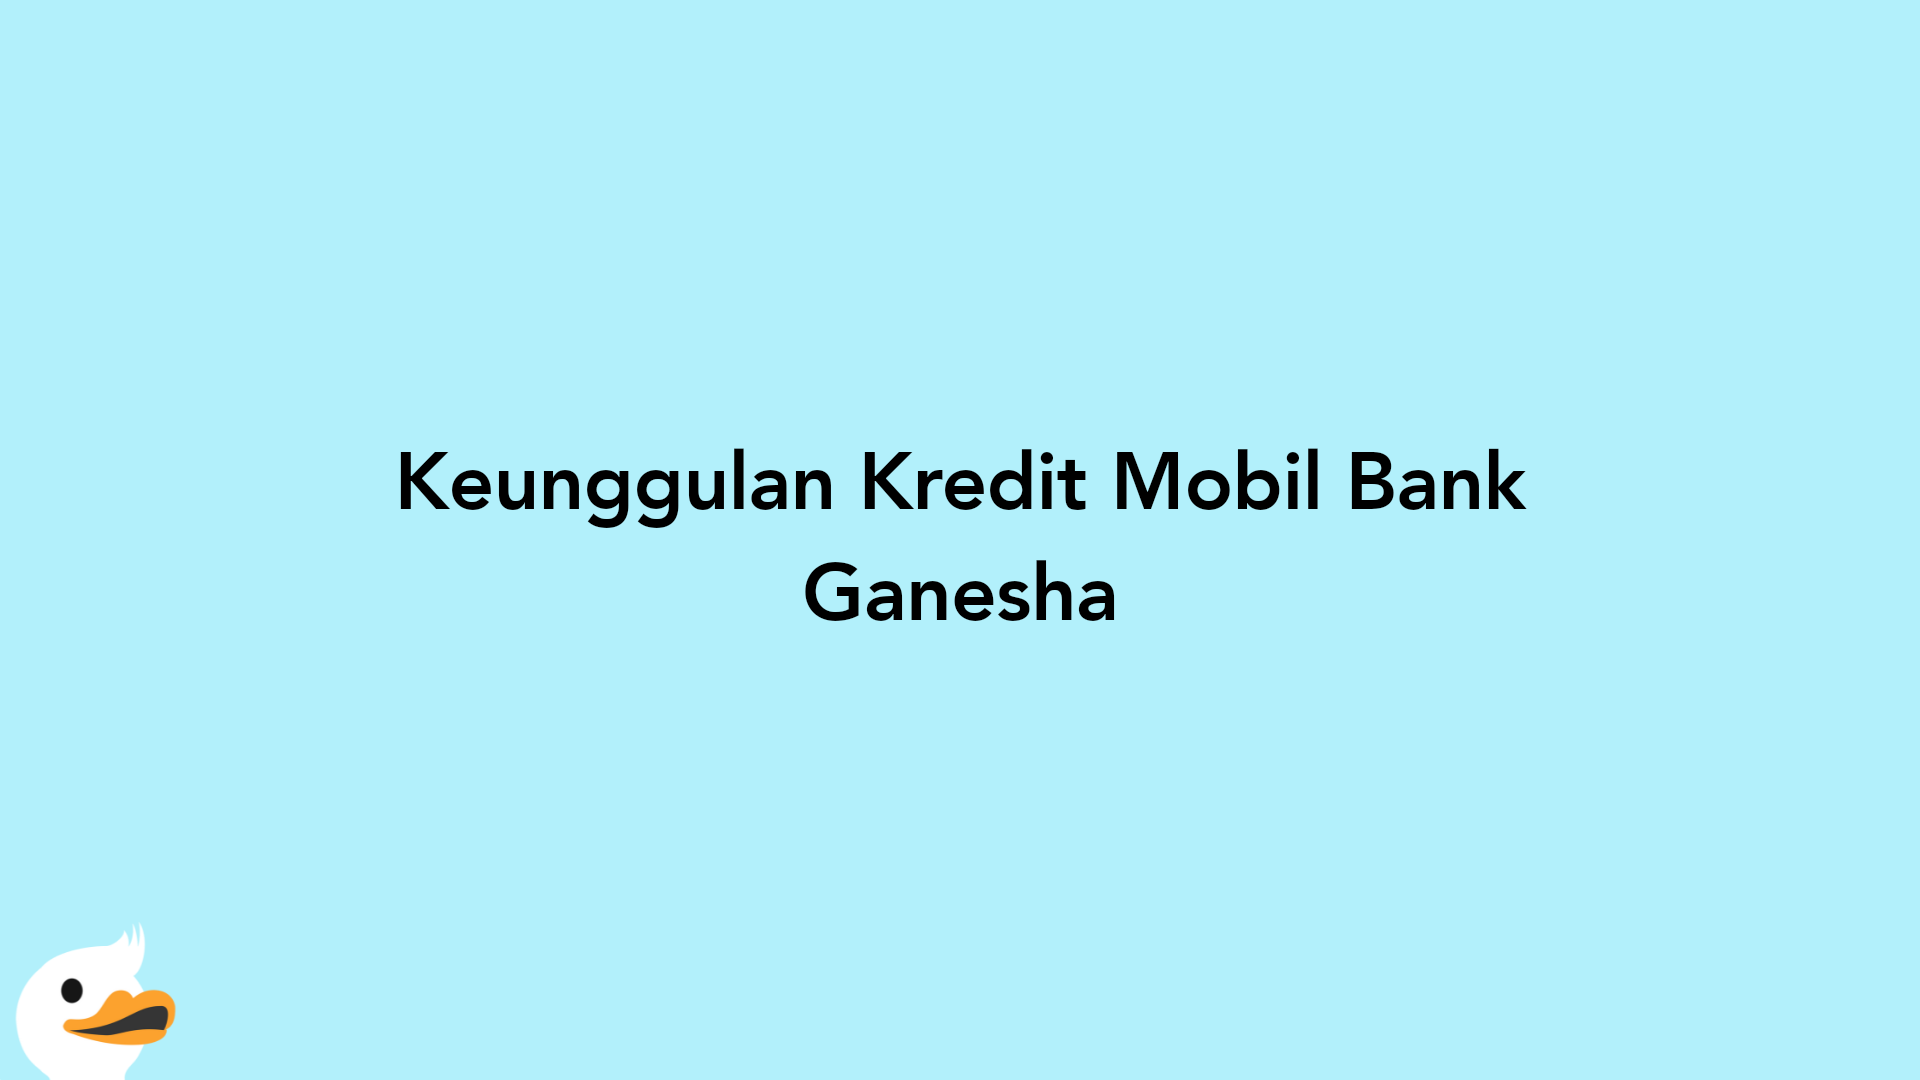 Keunggulan Kredit Mobil Bank Ganesha